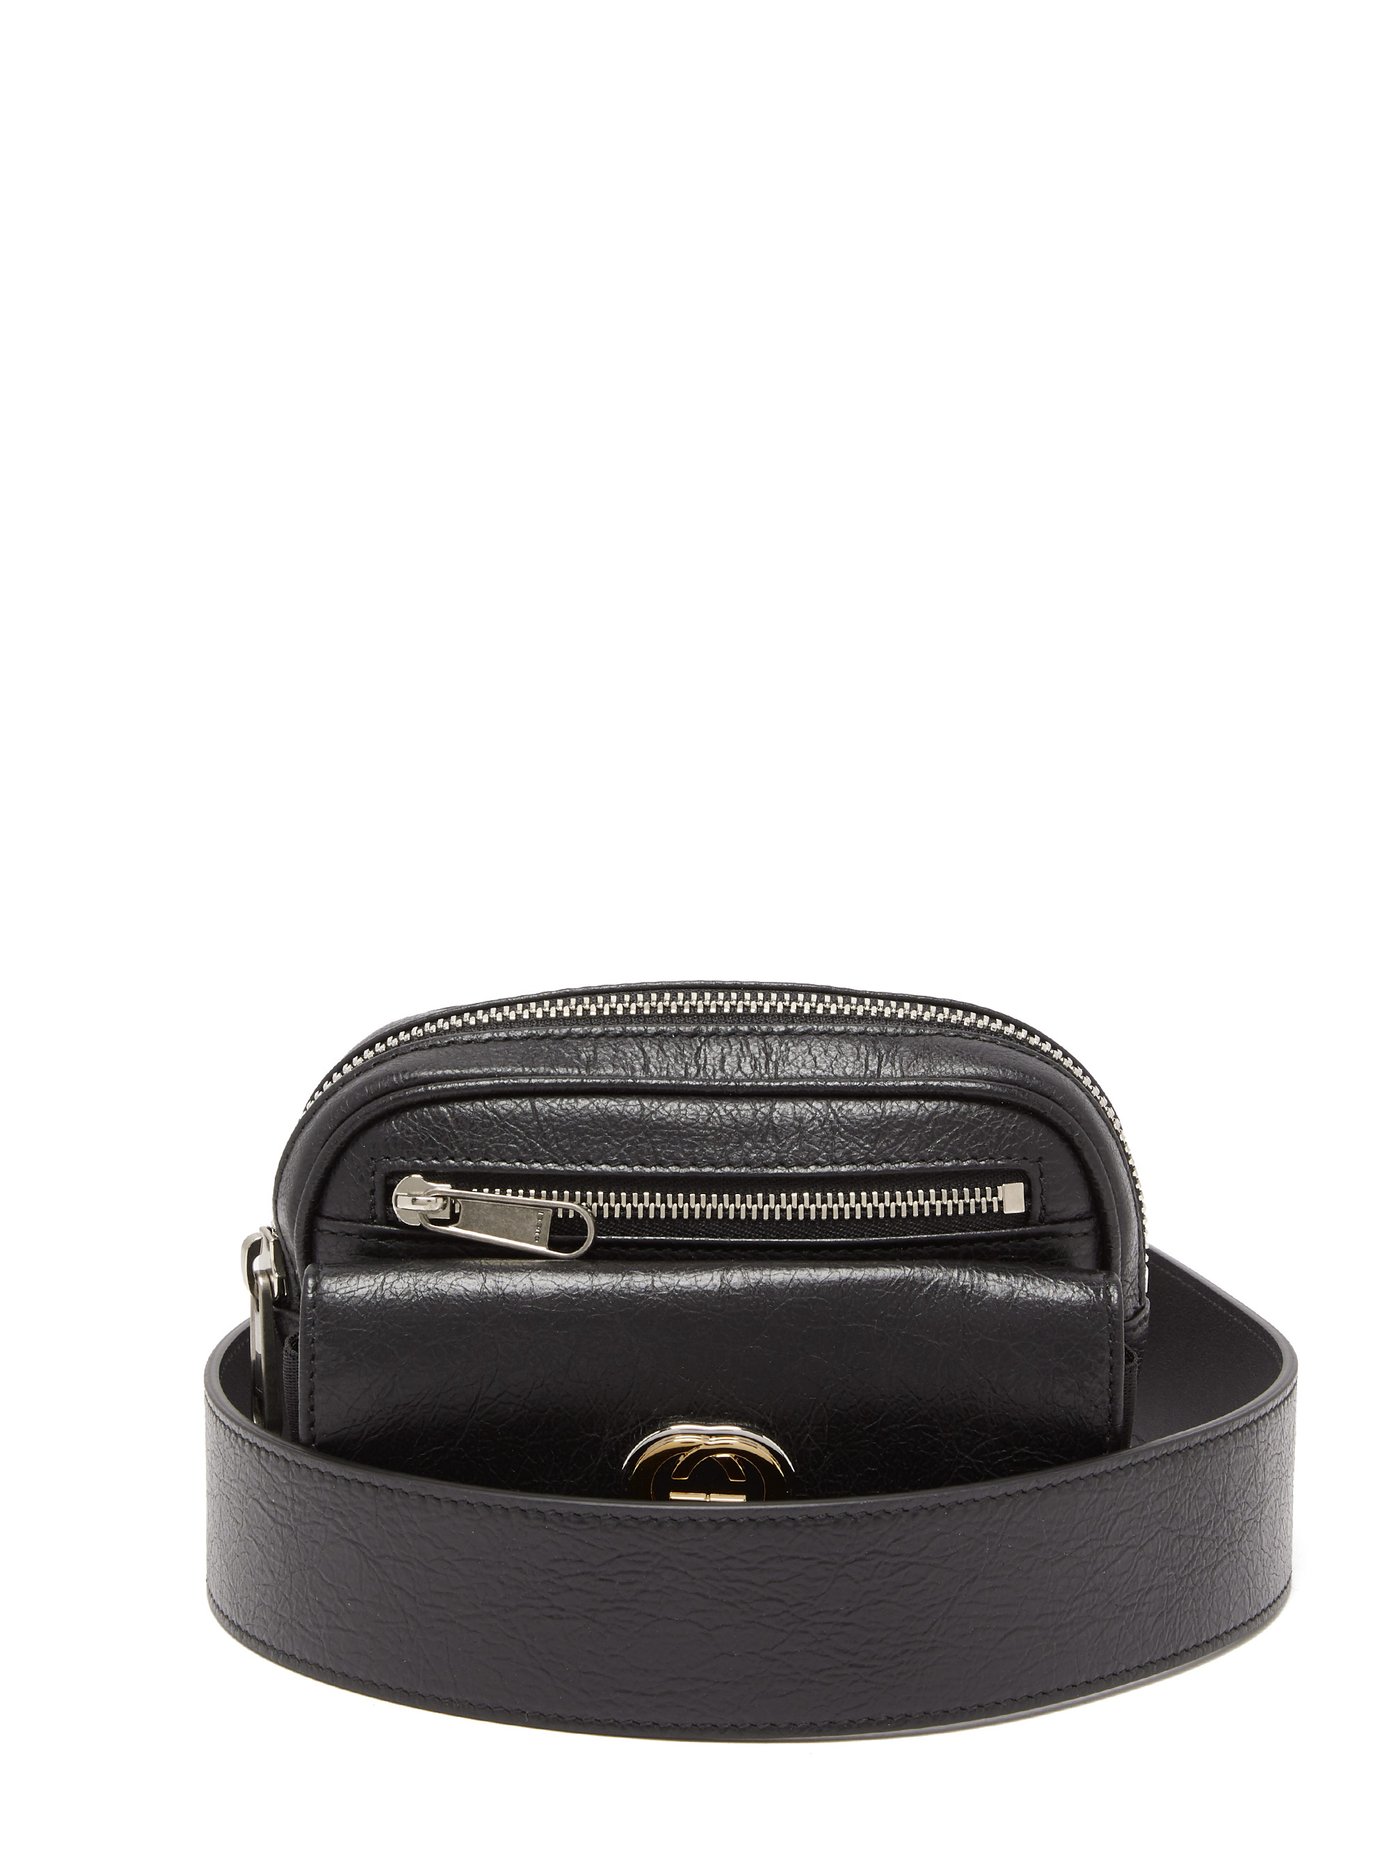 gucci black leather belt bag